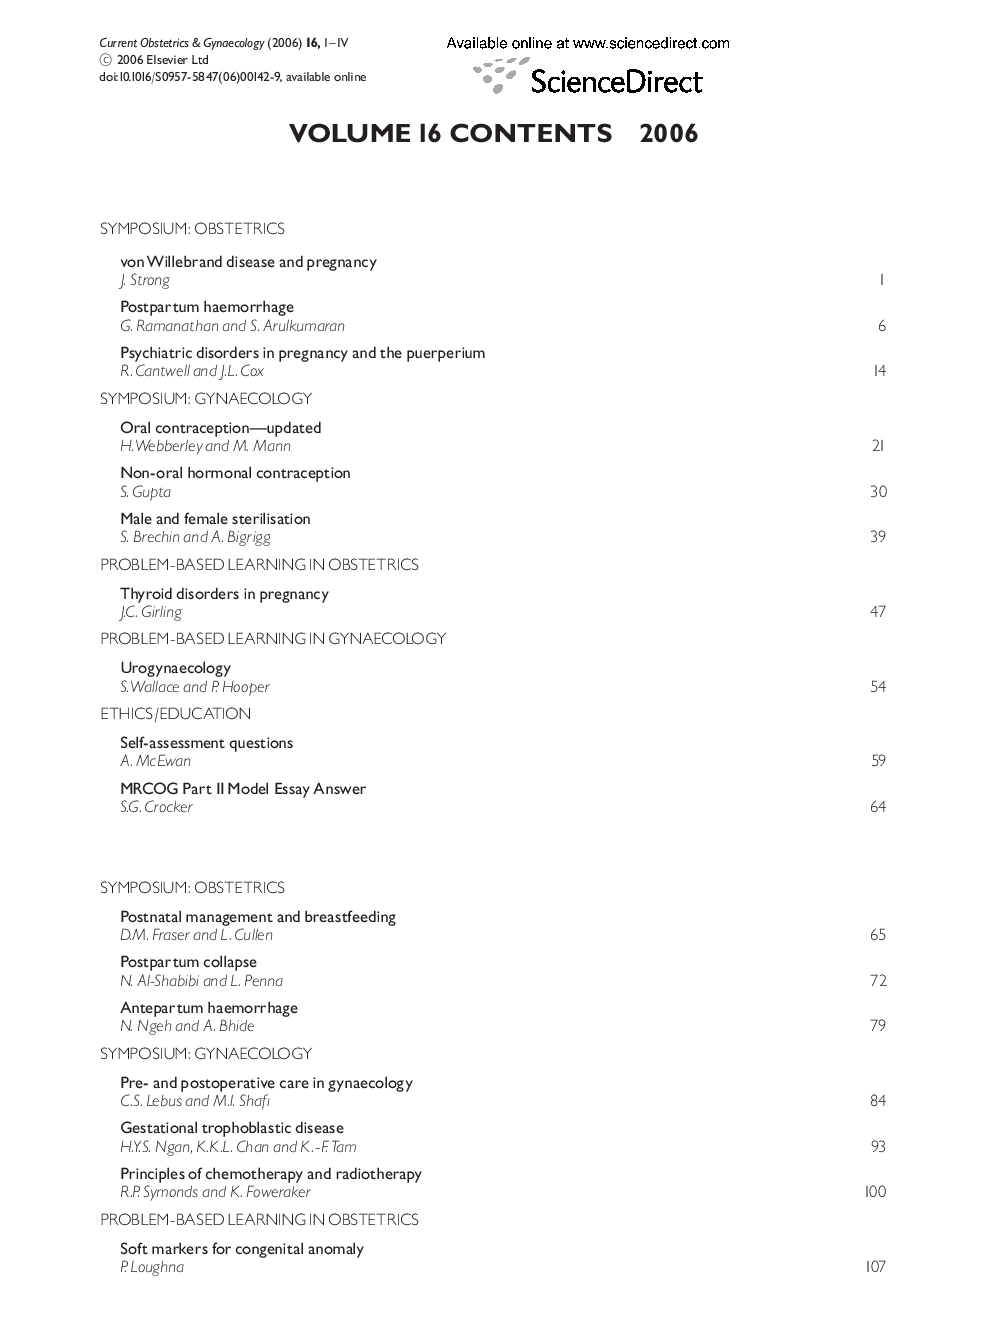 Volume 16 Contents